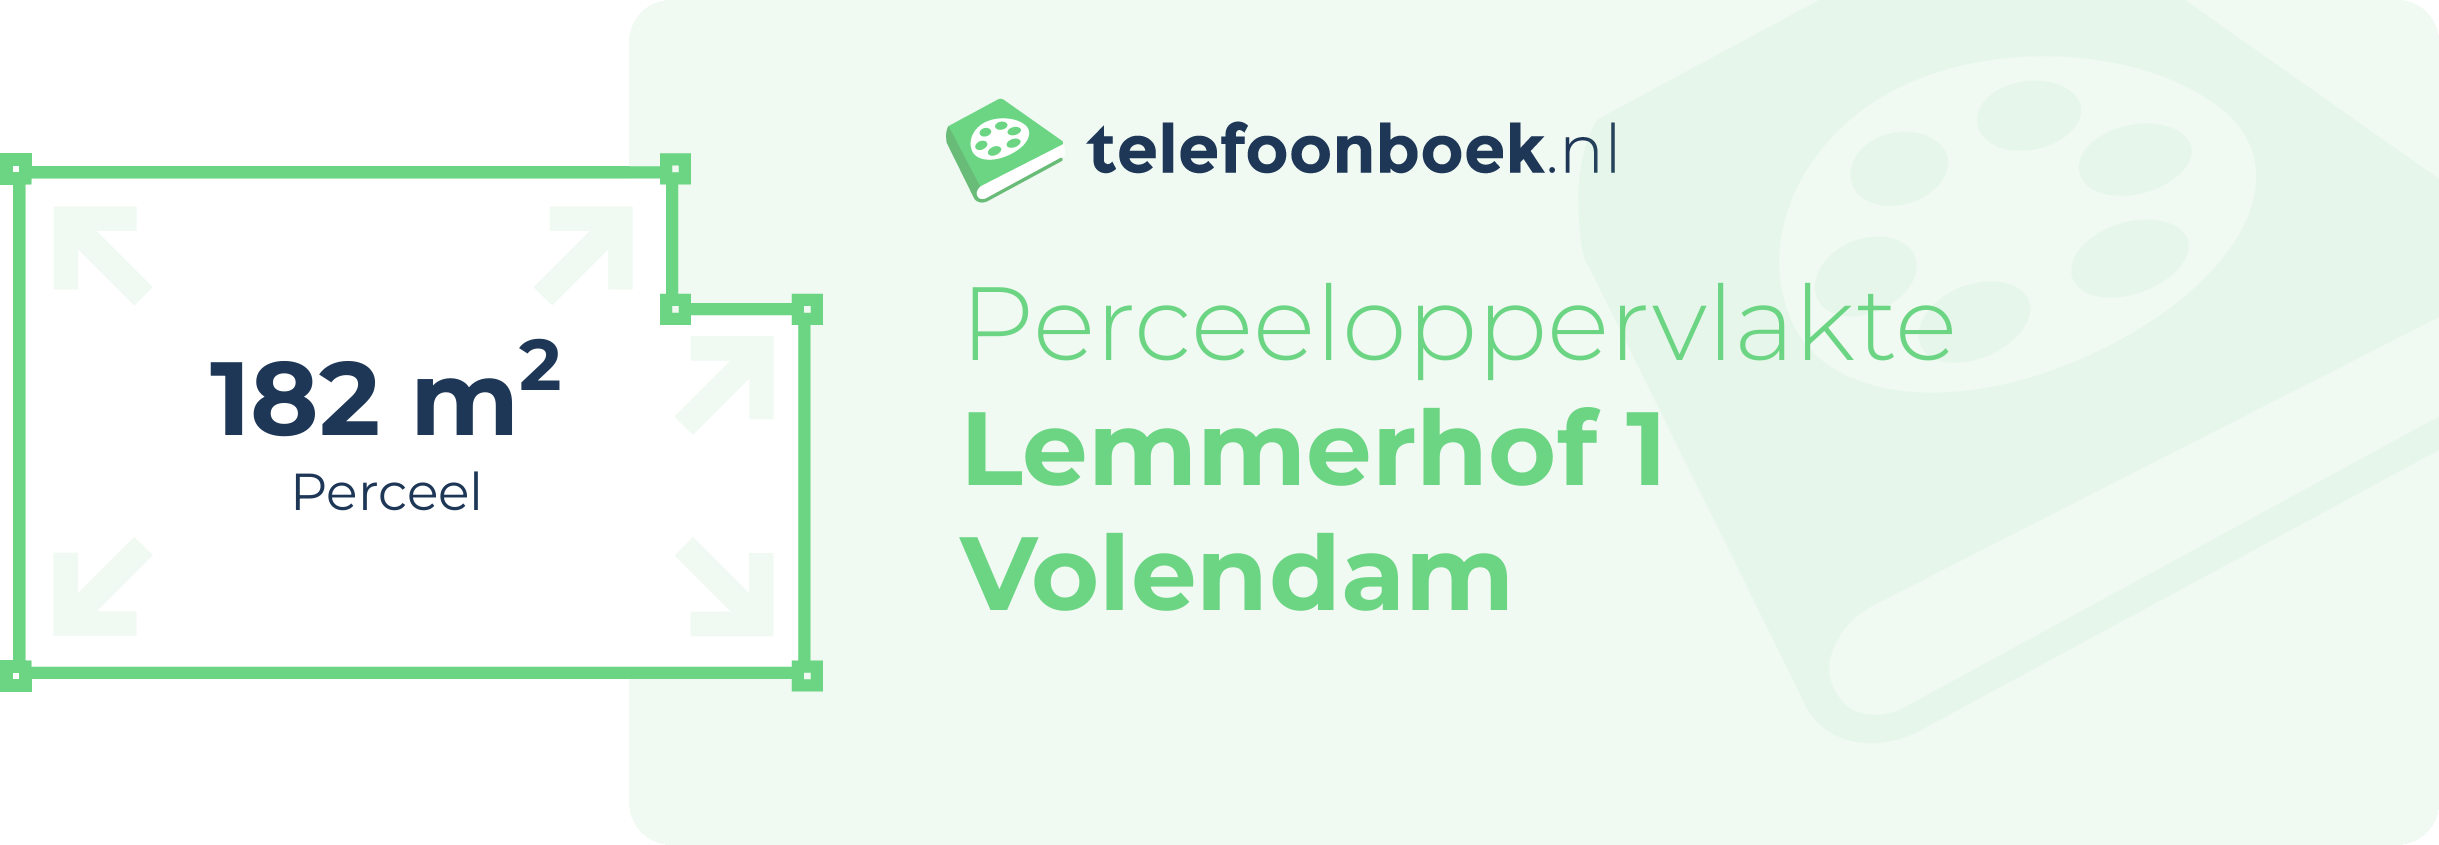 Perceeloppervlakte Lemmerhof 1 Volendam